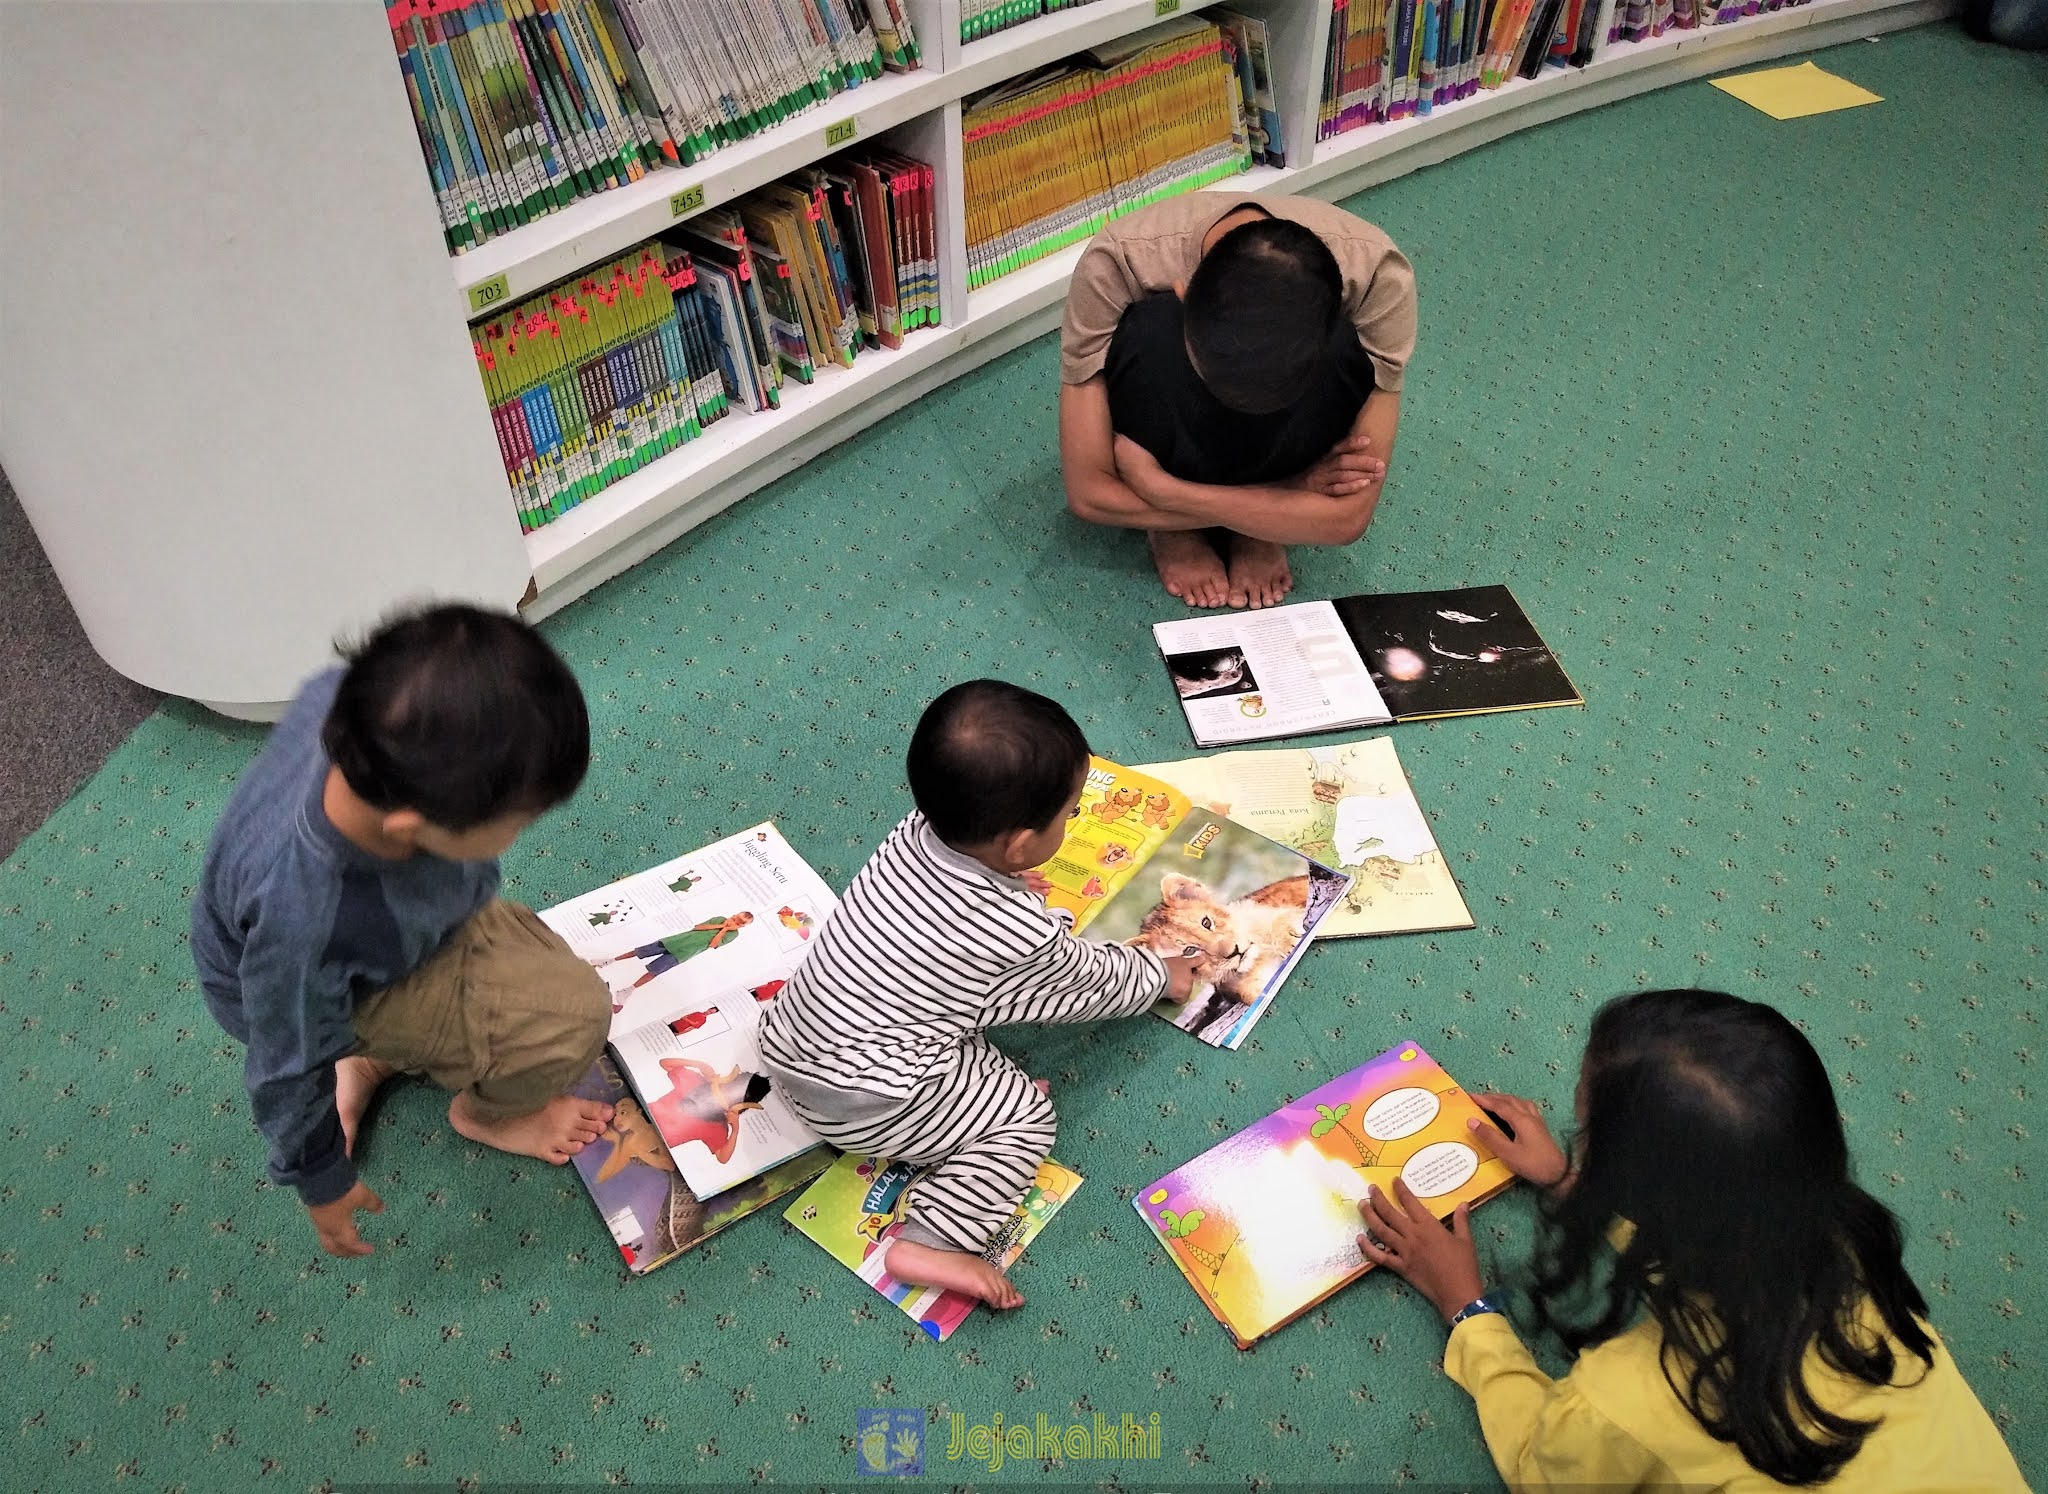 [Jejakakhi]Belajar-dan-Bermain-di-Perpustakaan-Anak-Dispusipda-Provinsi-Jawa-Barat